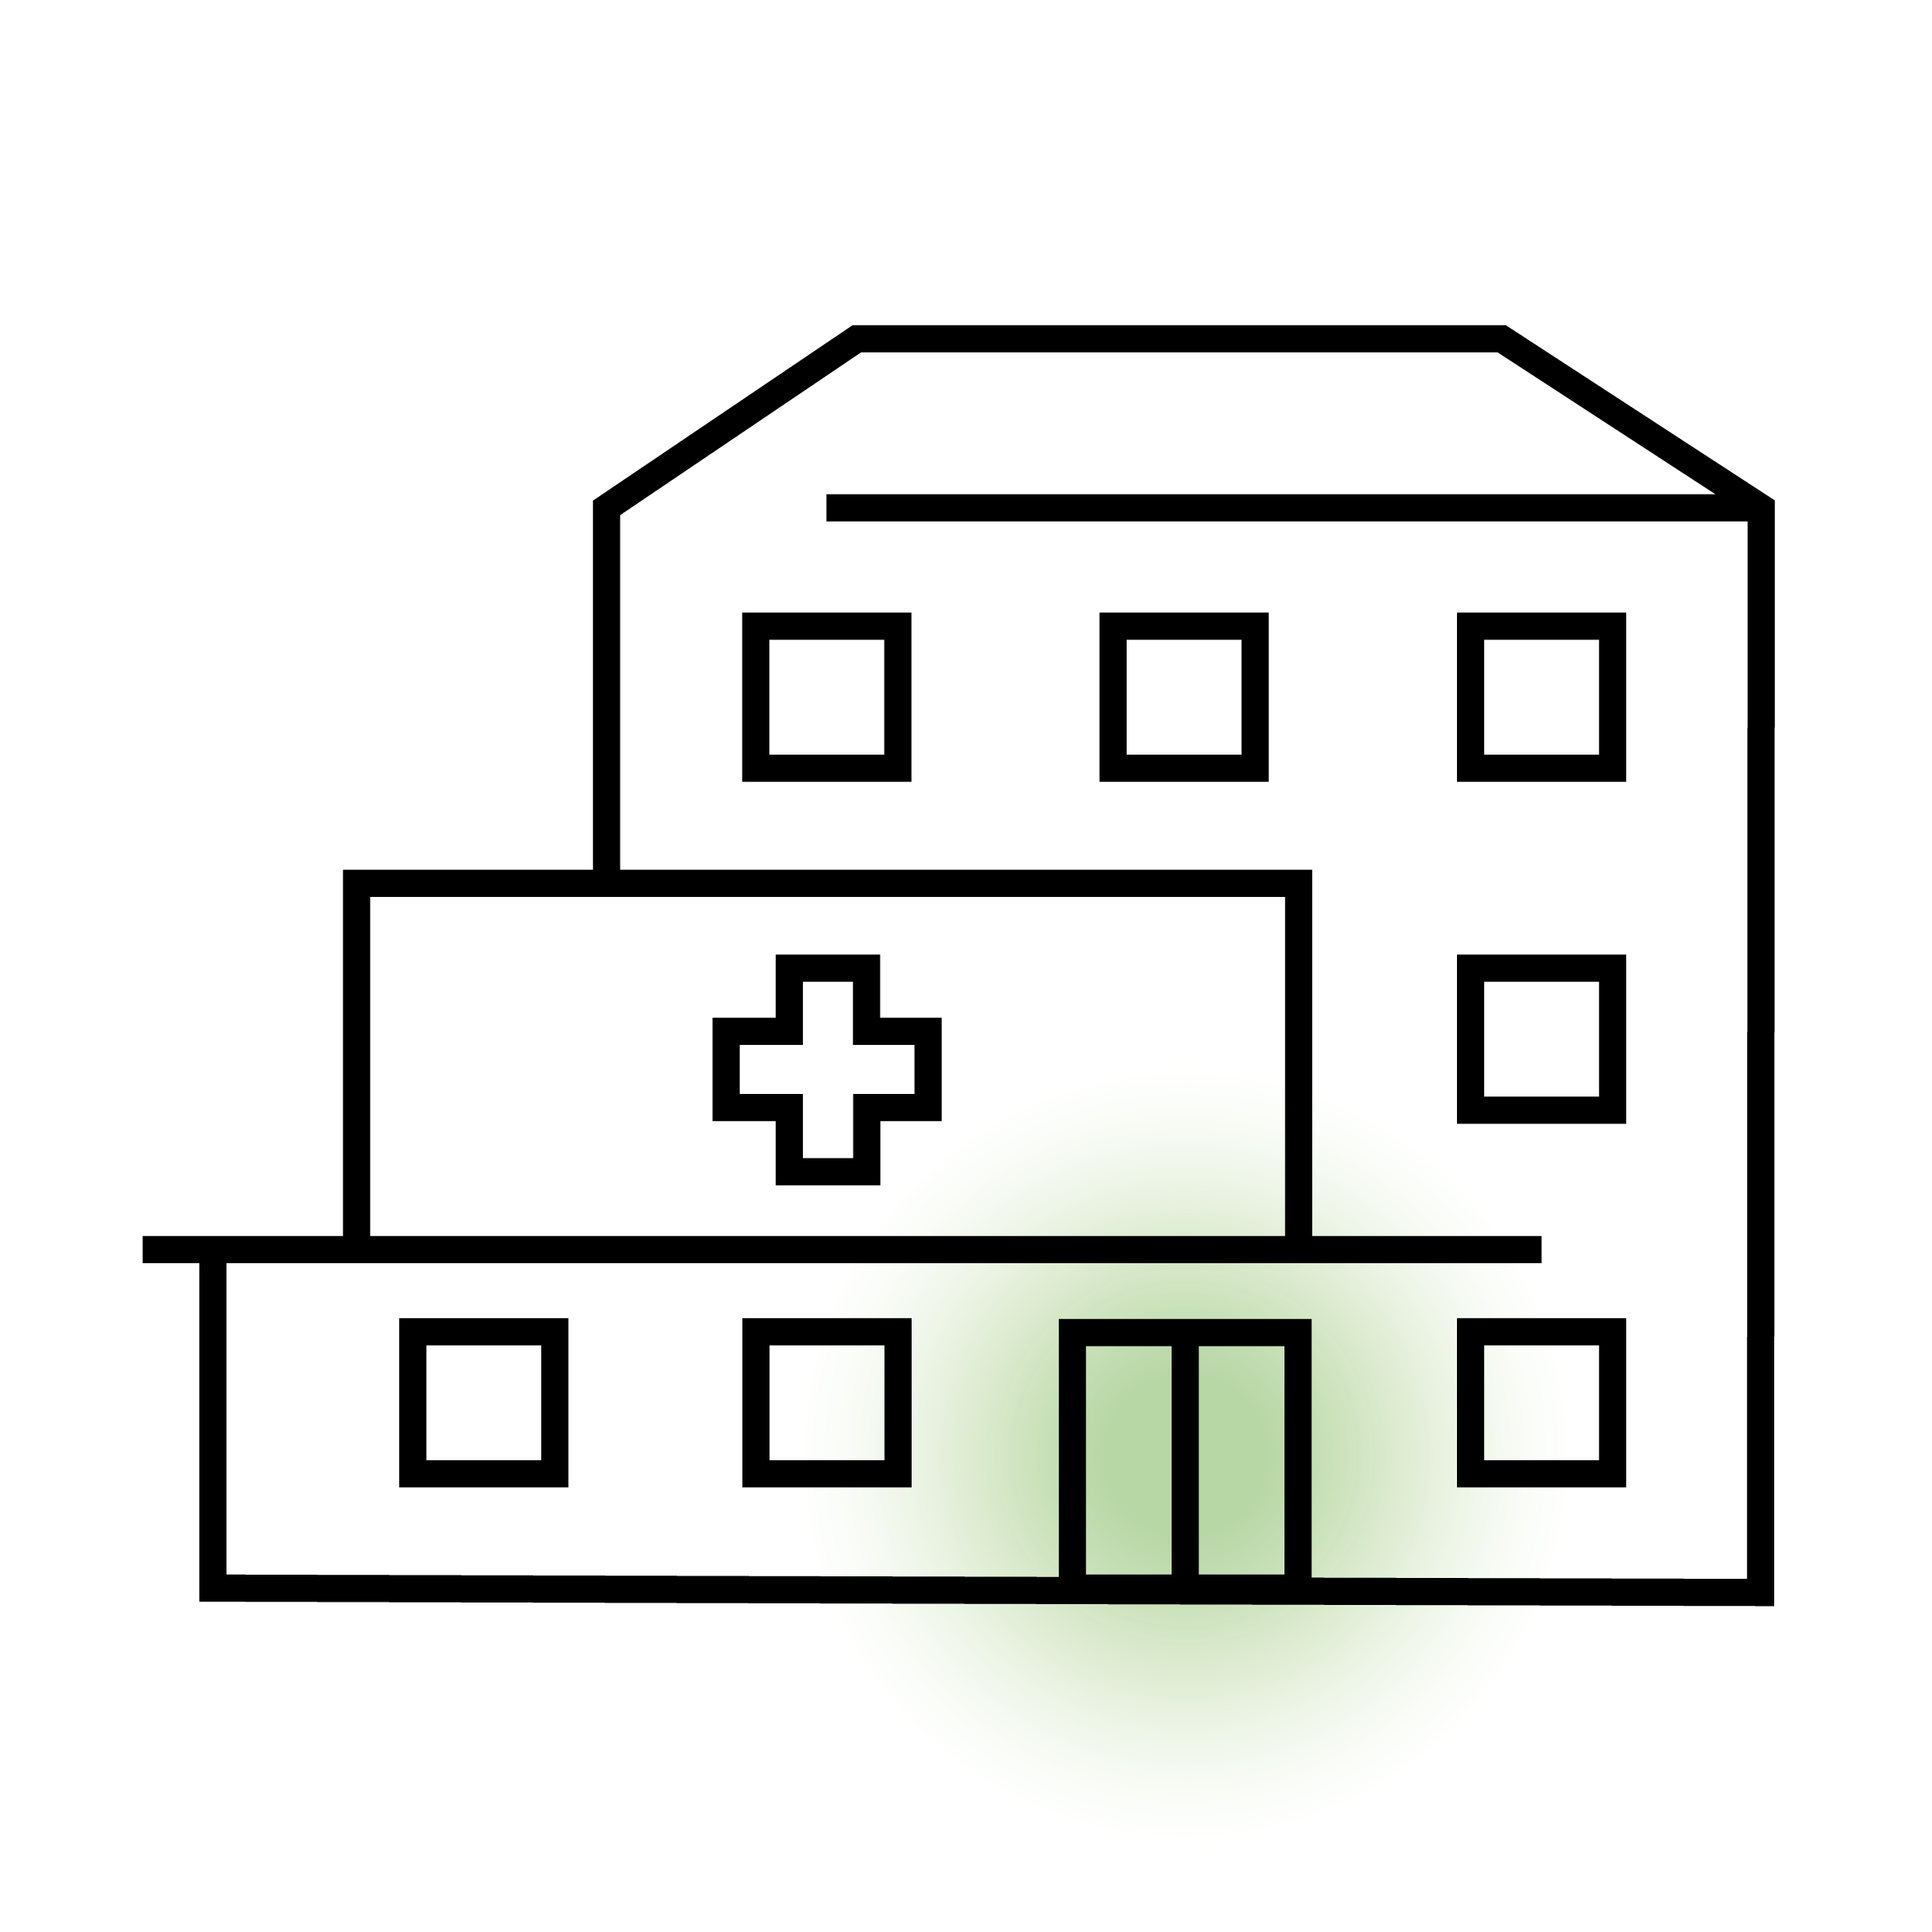 Lineart-Zeichnung eines Krankenhauses.